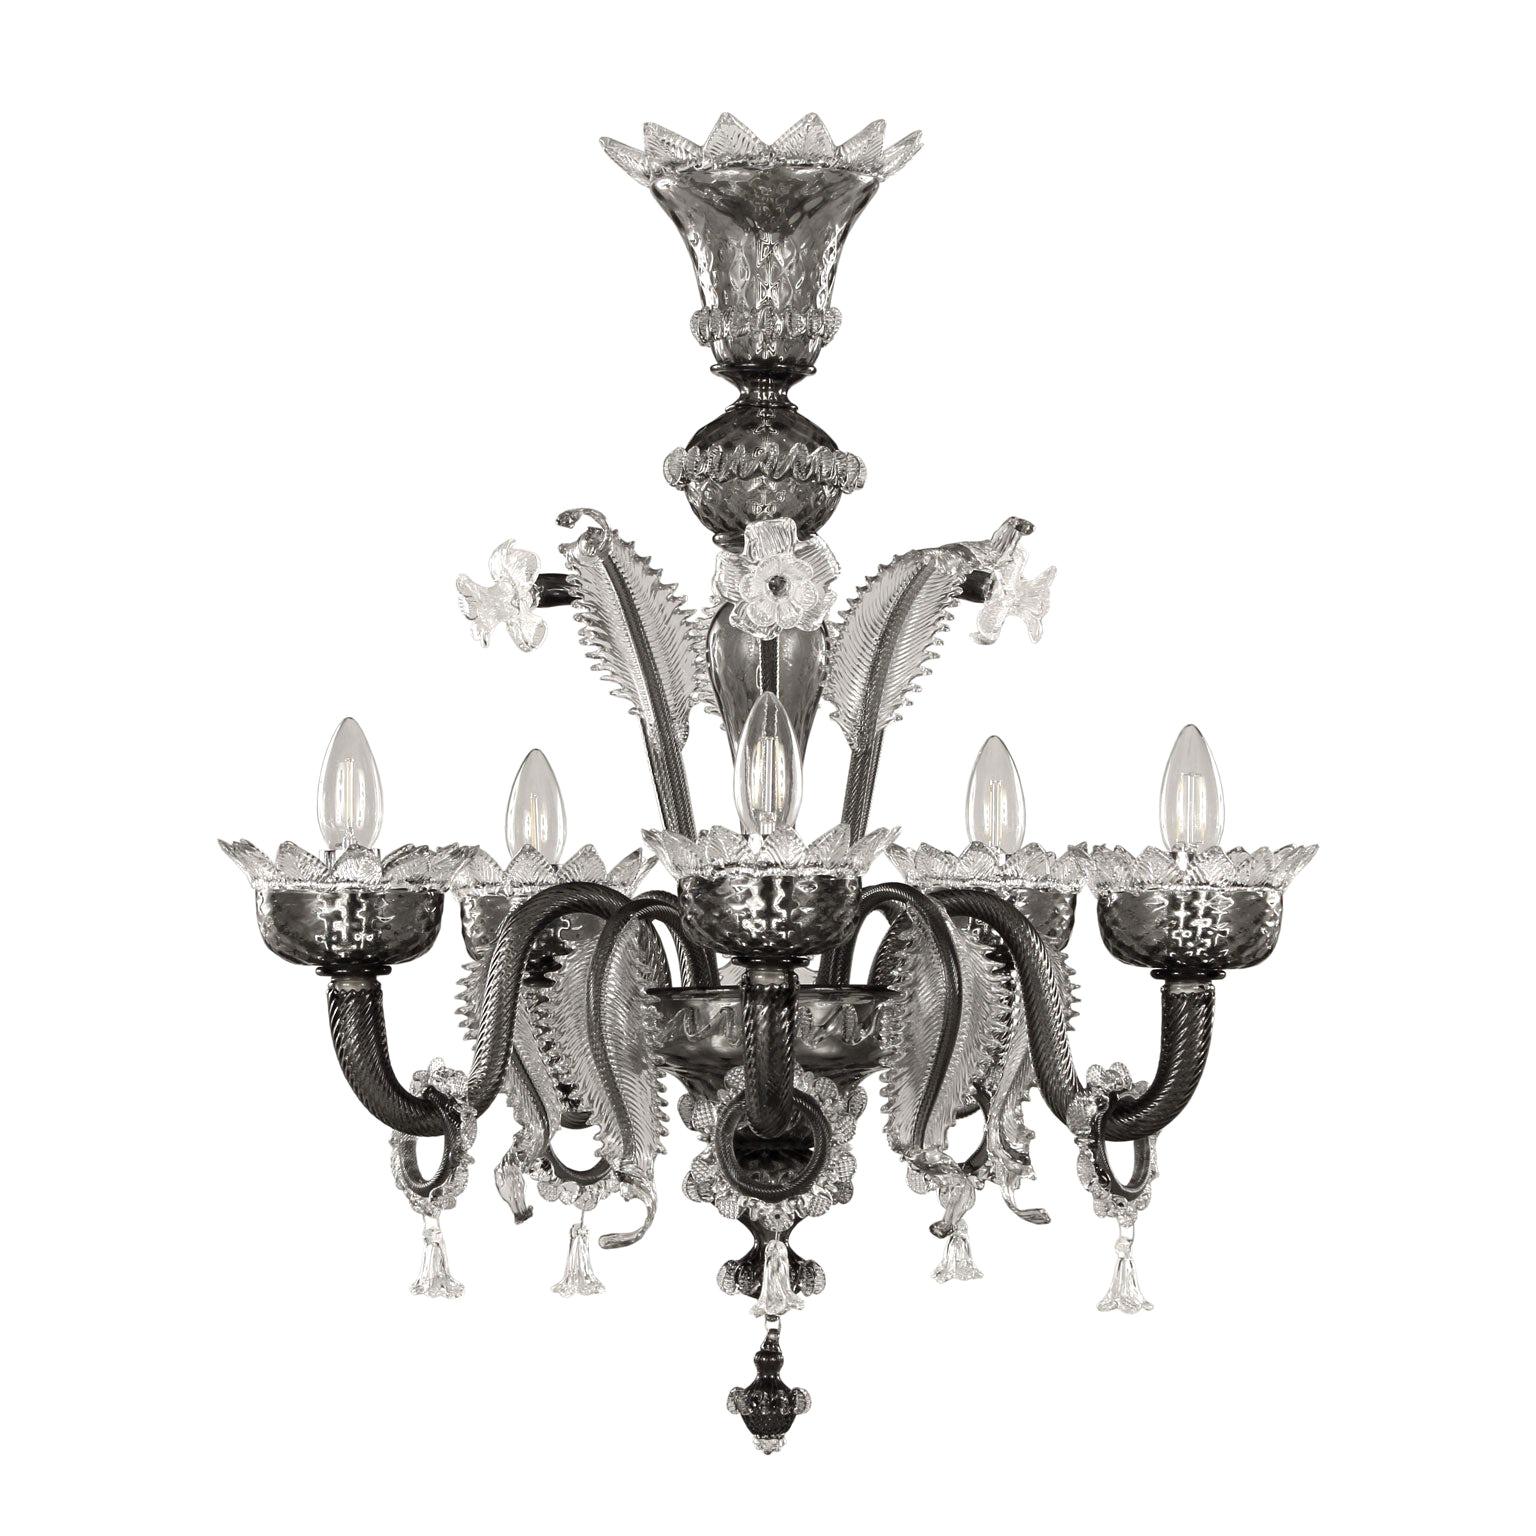 Kronleuchter im venezianischen Stil mit 5 Armen aus grauem Muranoglas mit klaren Details von Multiforme